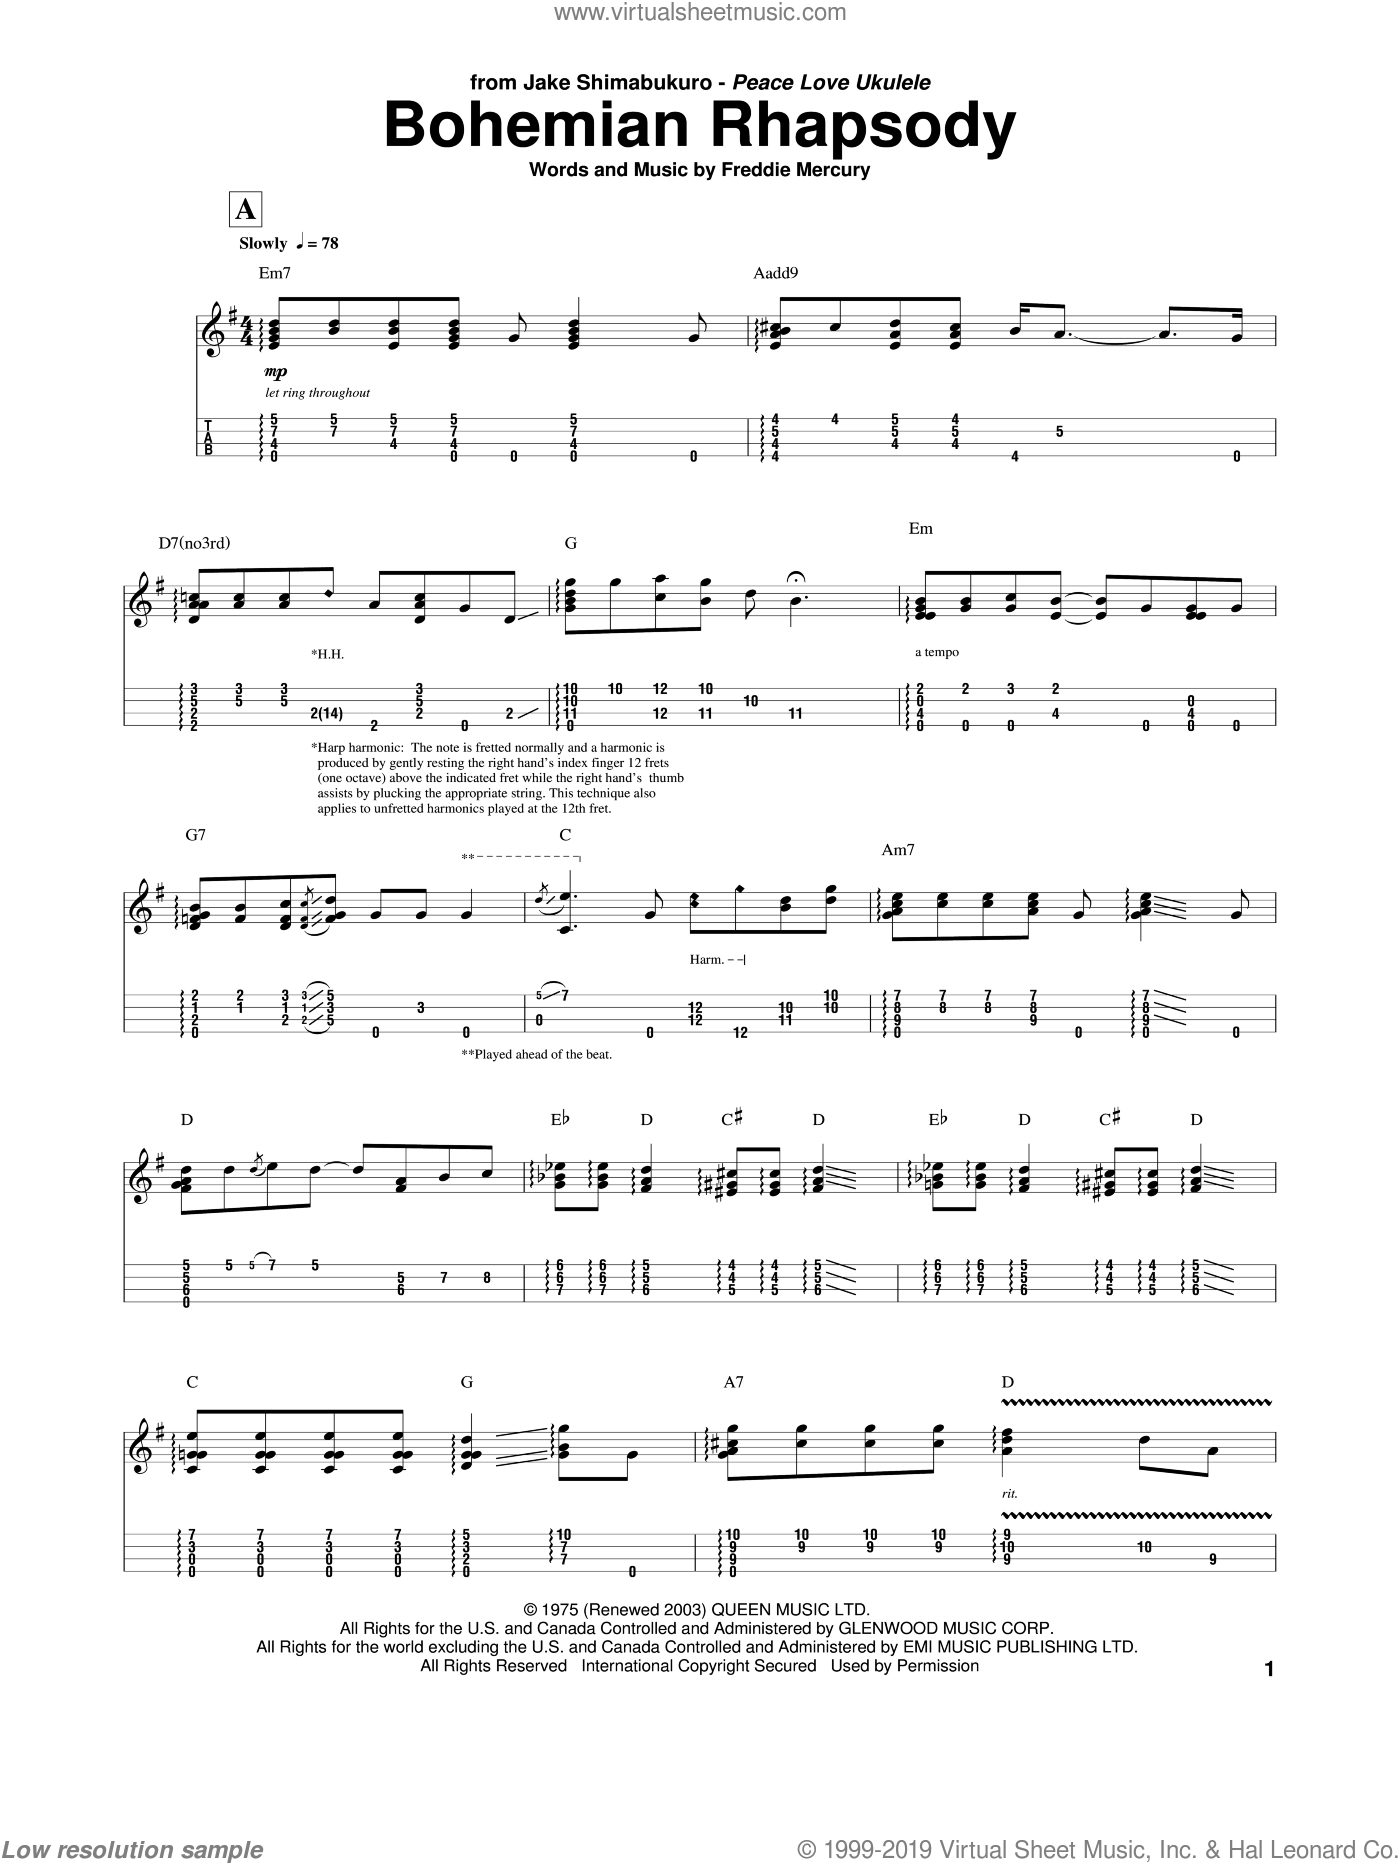 free ukulele tab sheet music